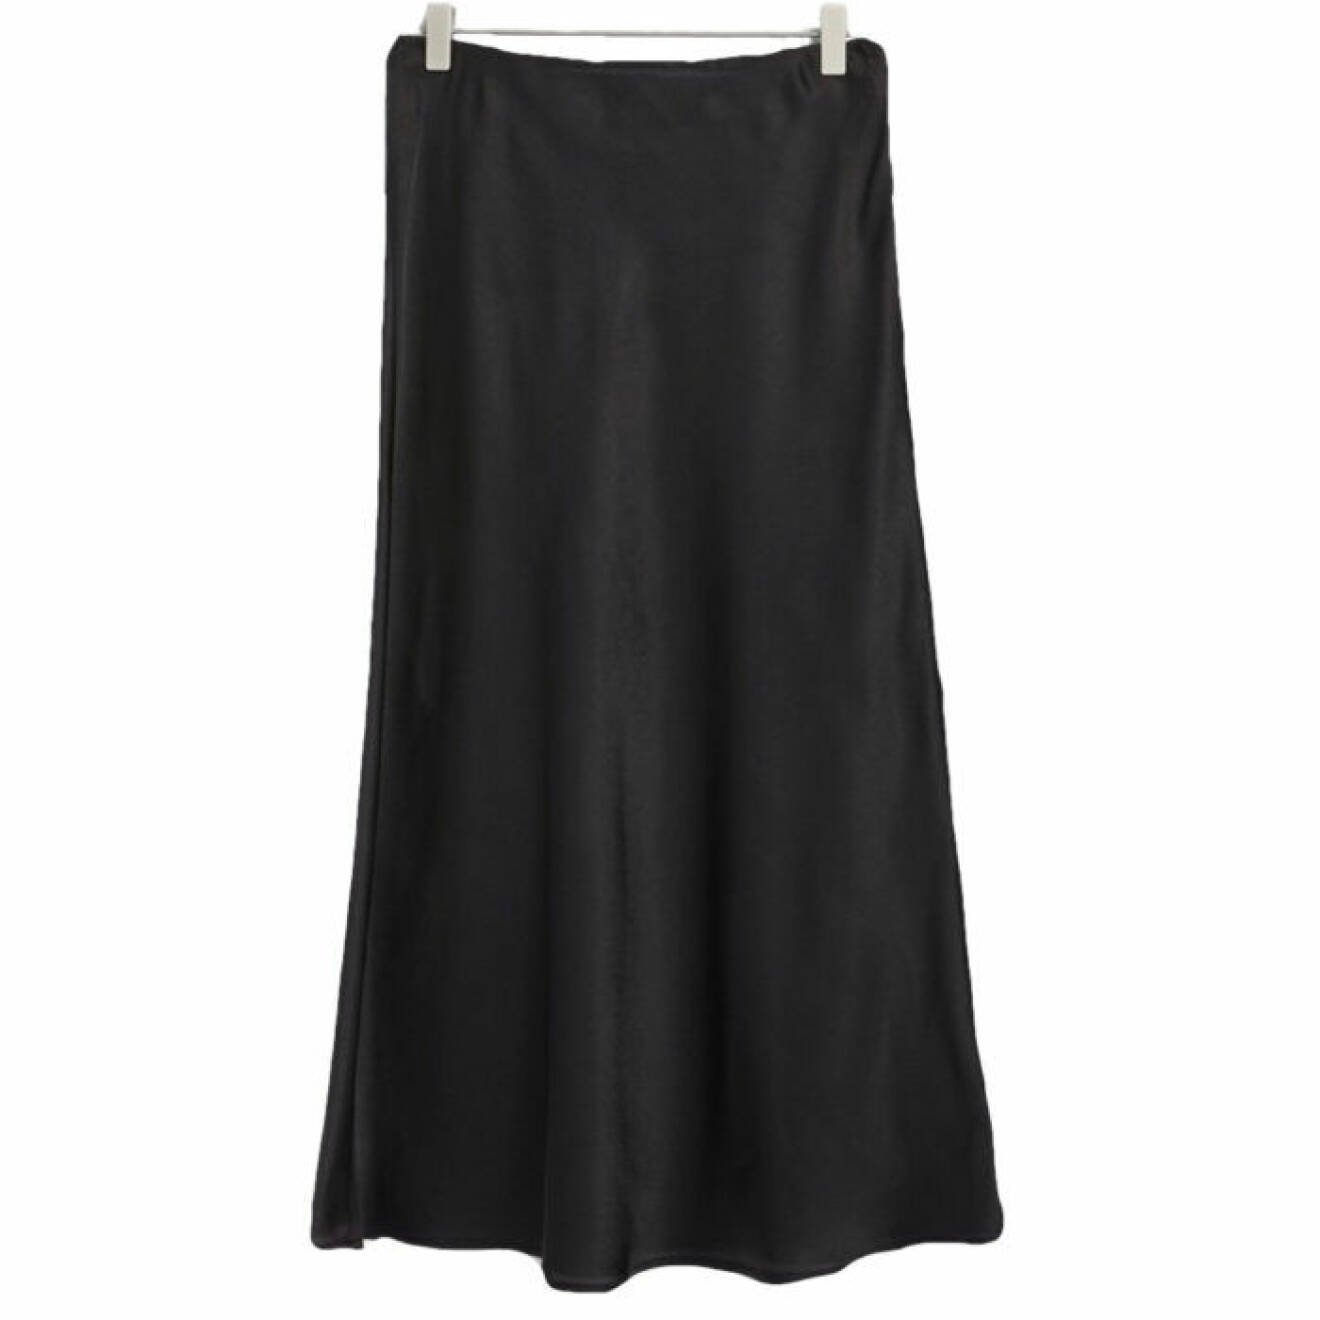 Glansig medellång kjol från lindex.